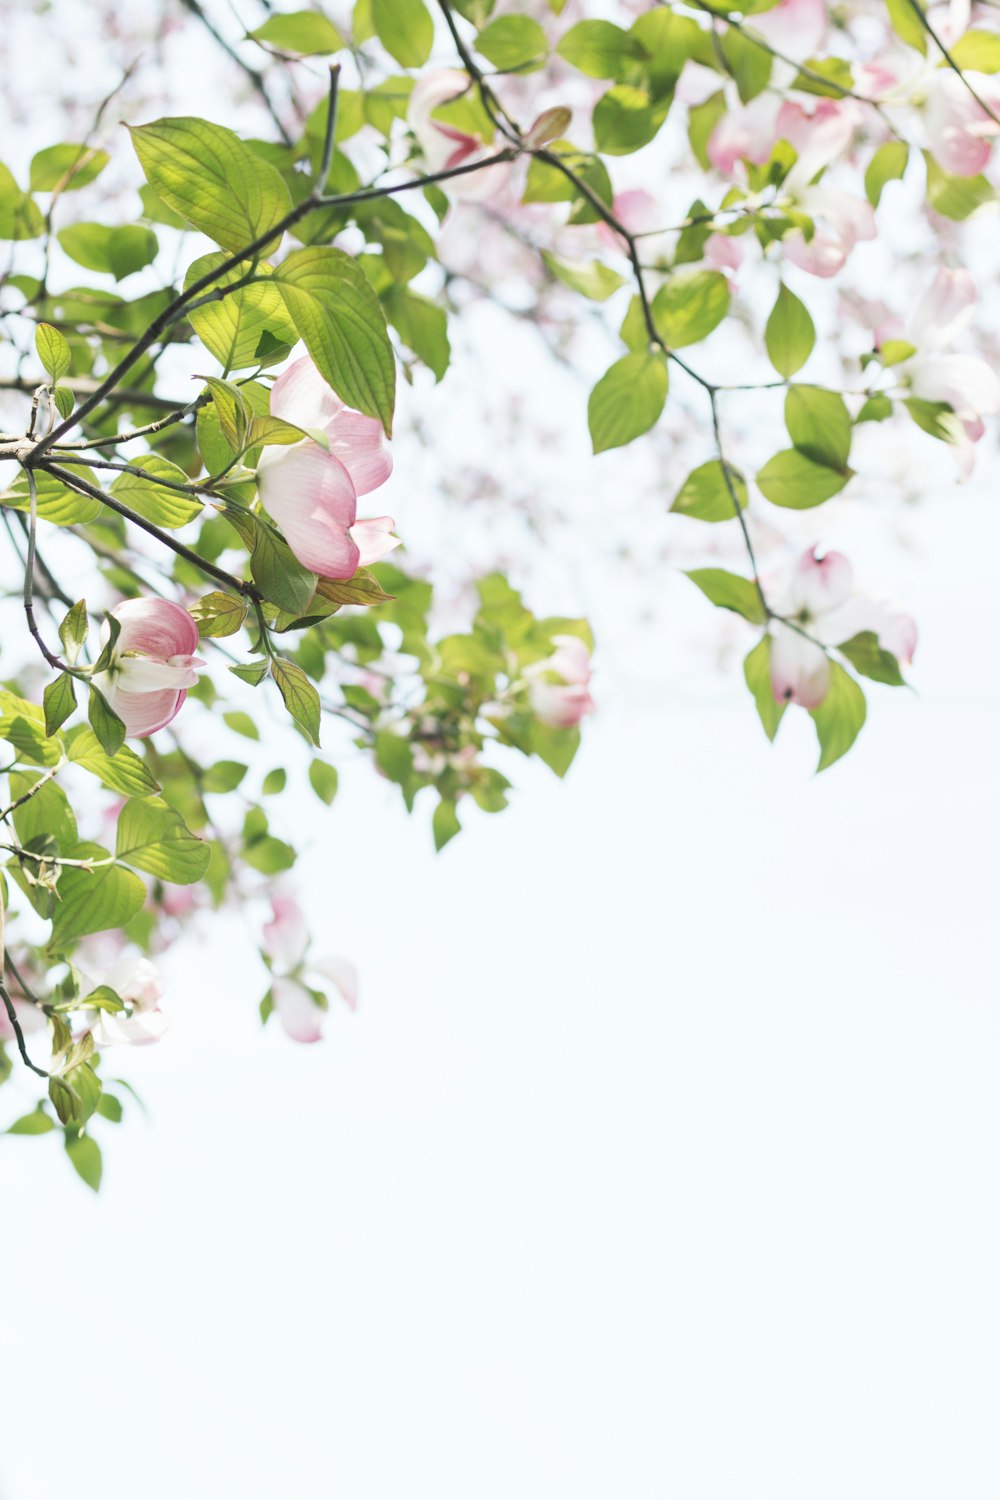 Photographie à mise au point peu profonde d’un arbre avec des fleurs roses